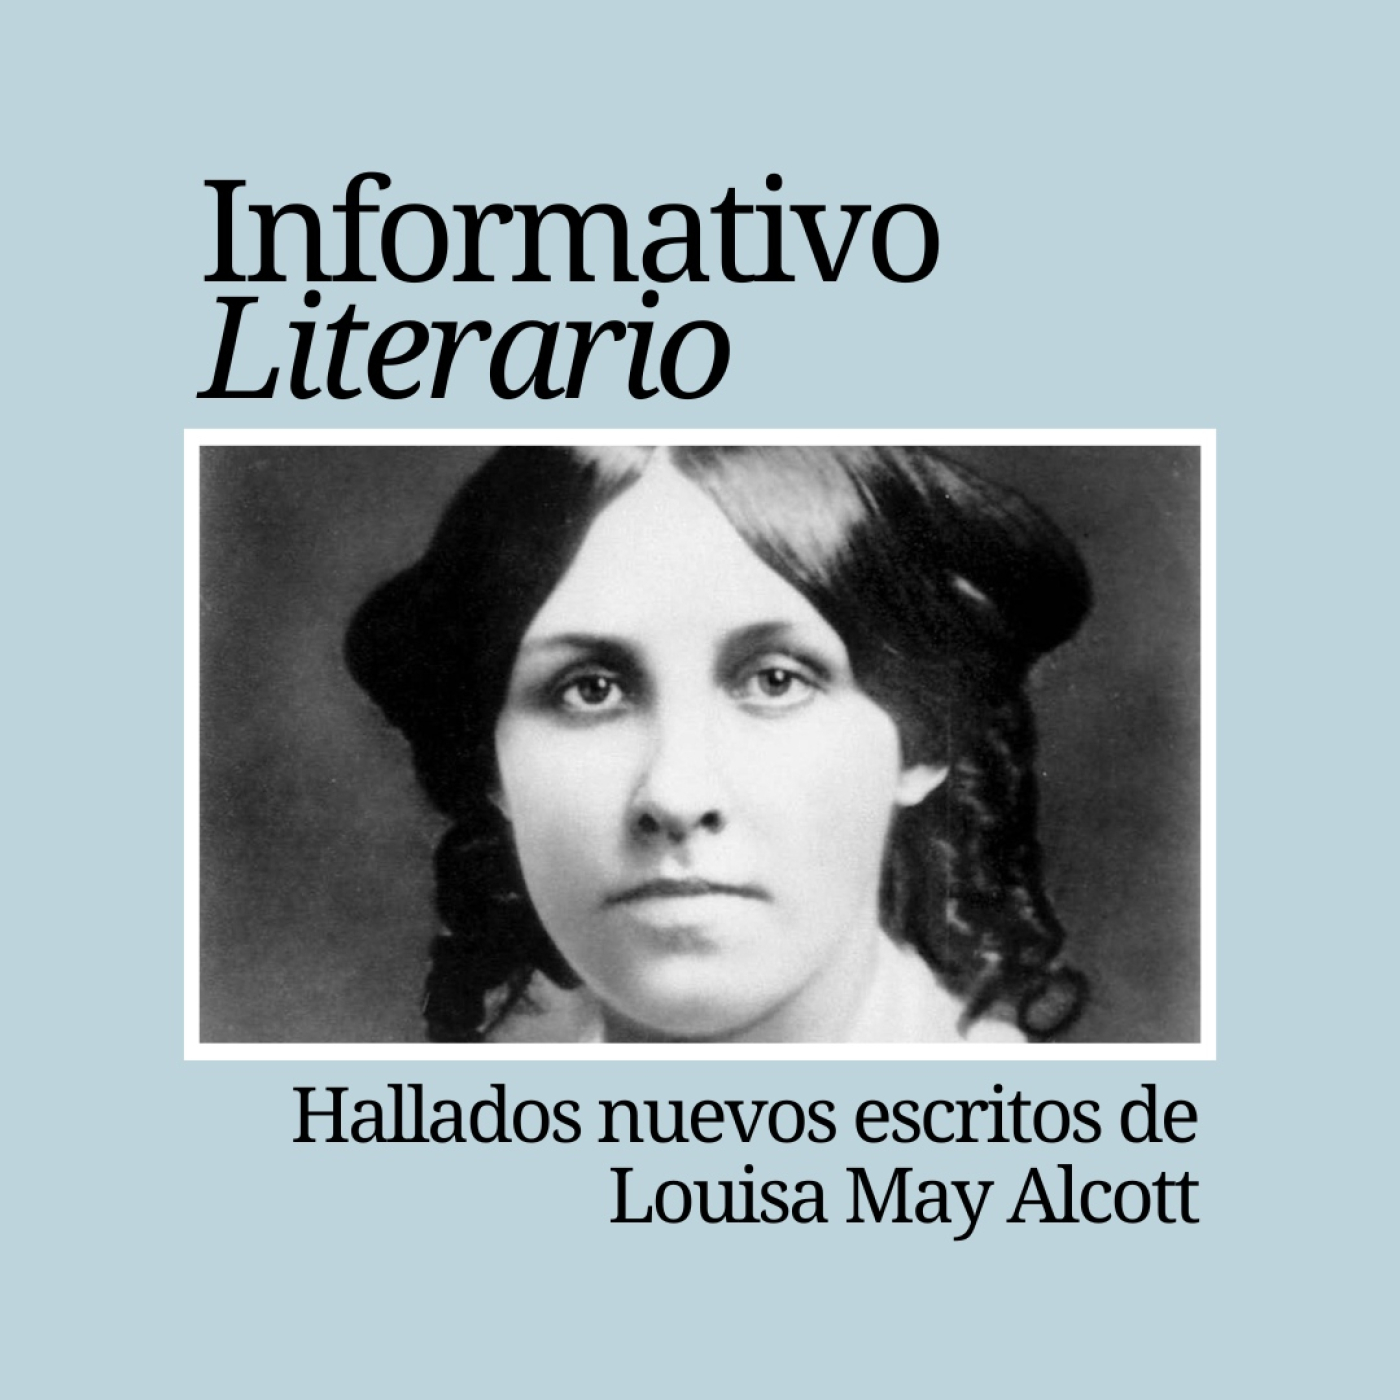 Informativo Literario. Hallados nuevos escritos de Louisa May Alcott